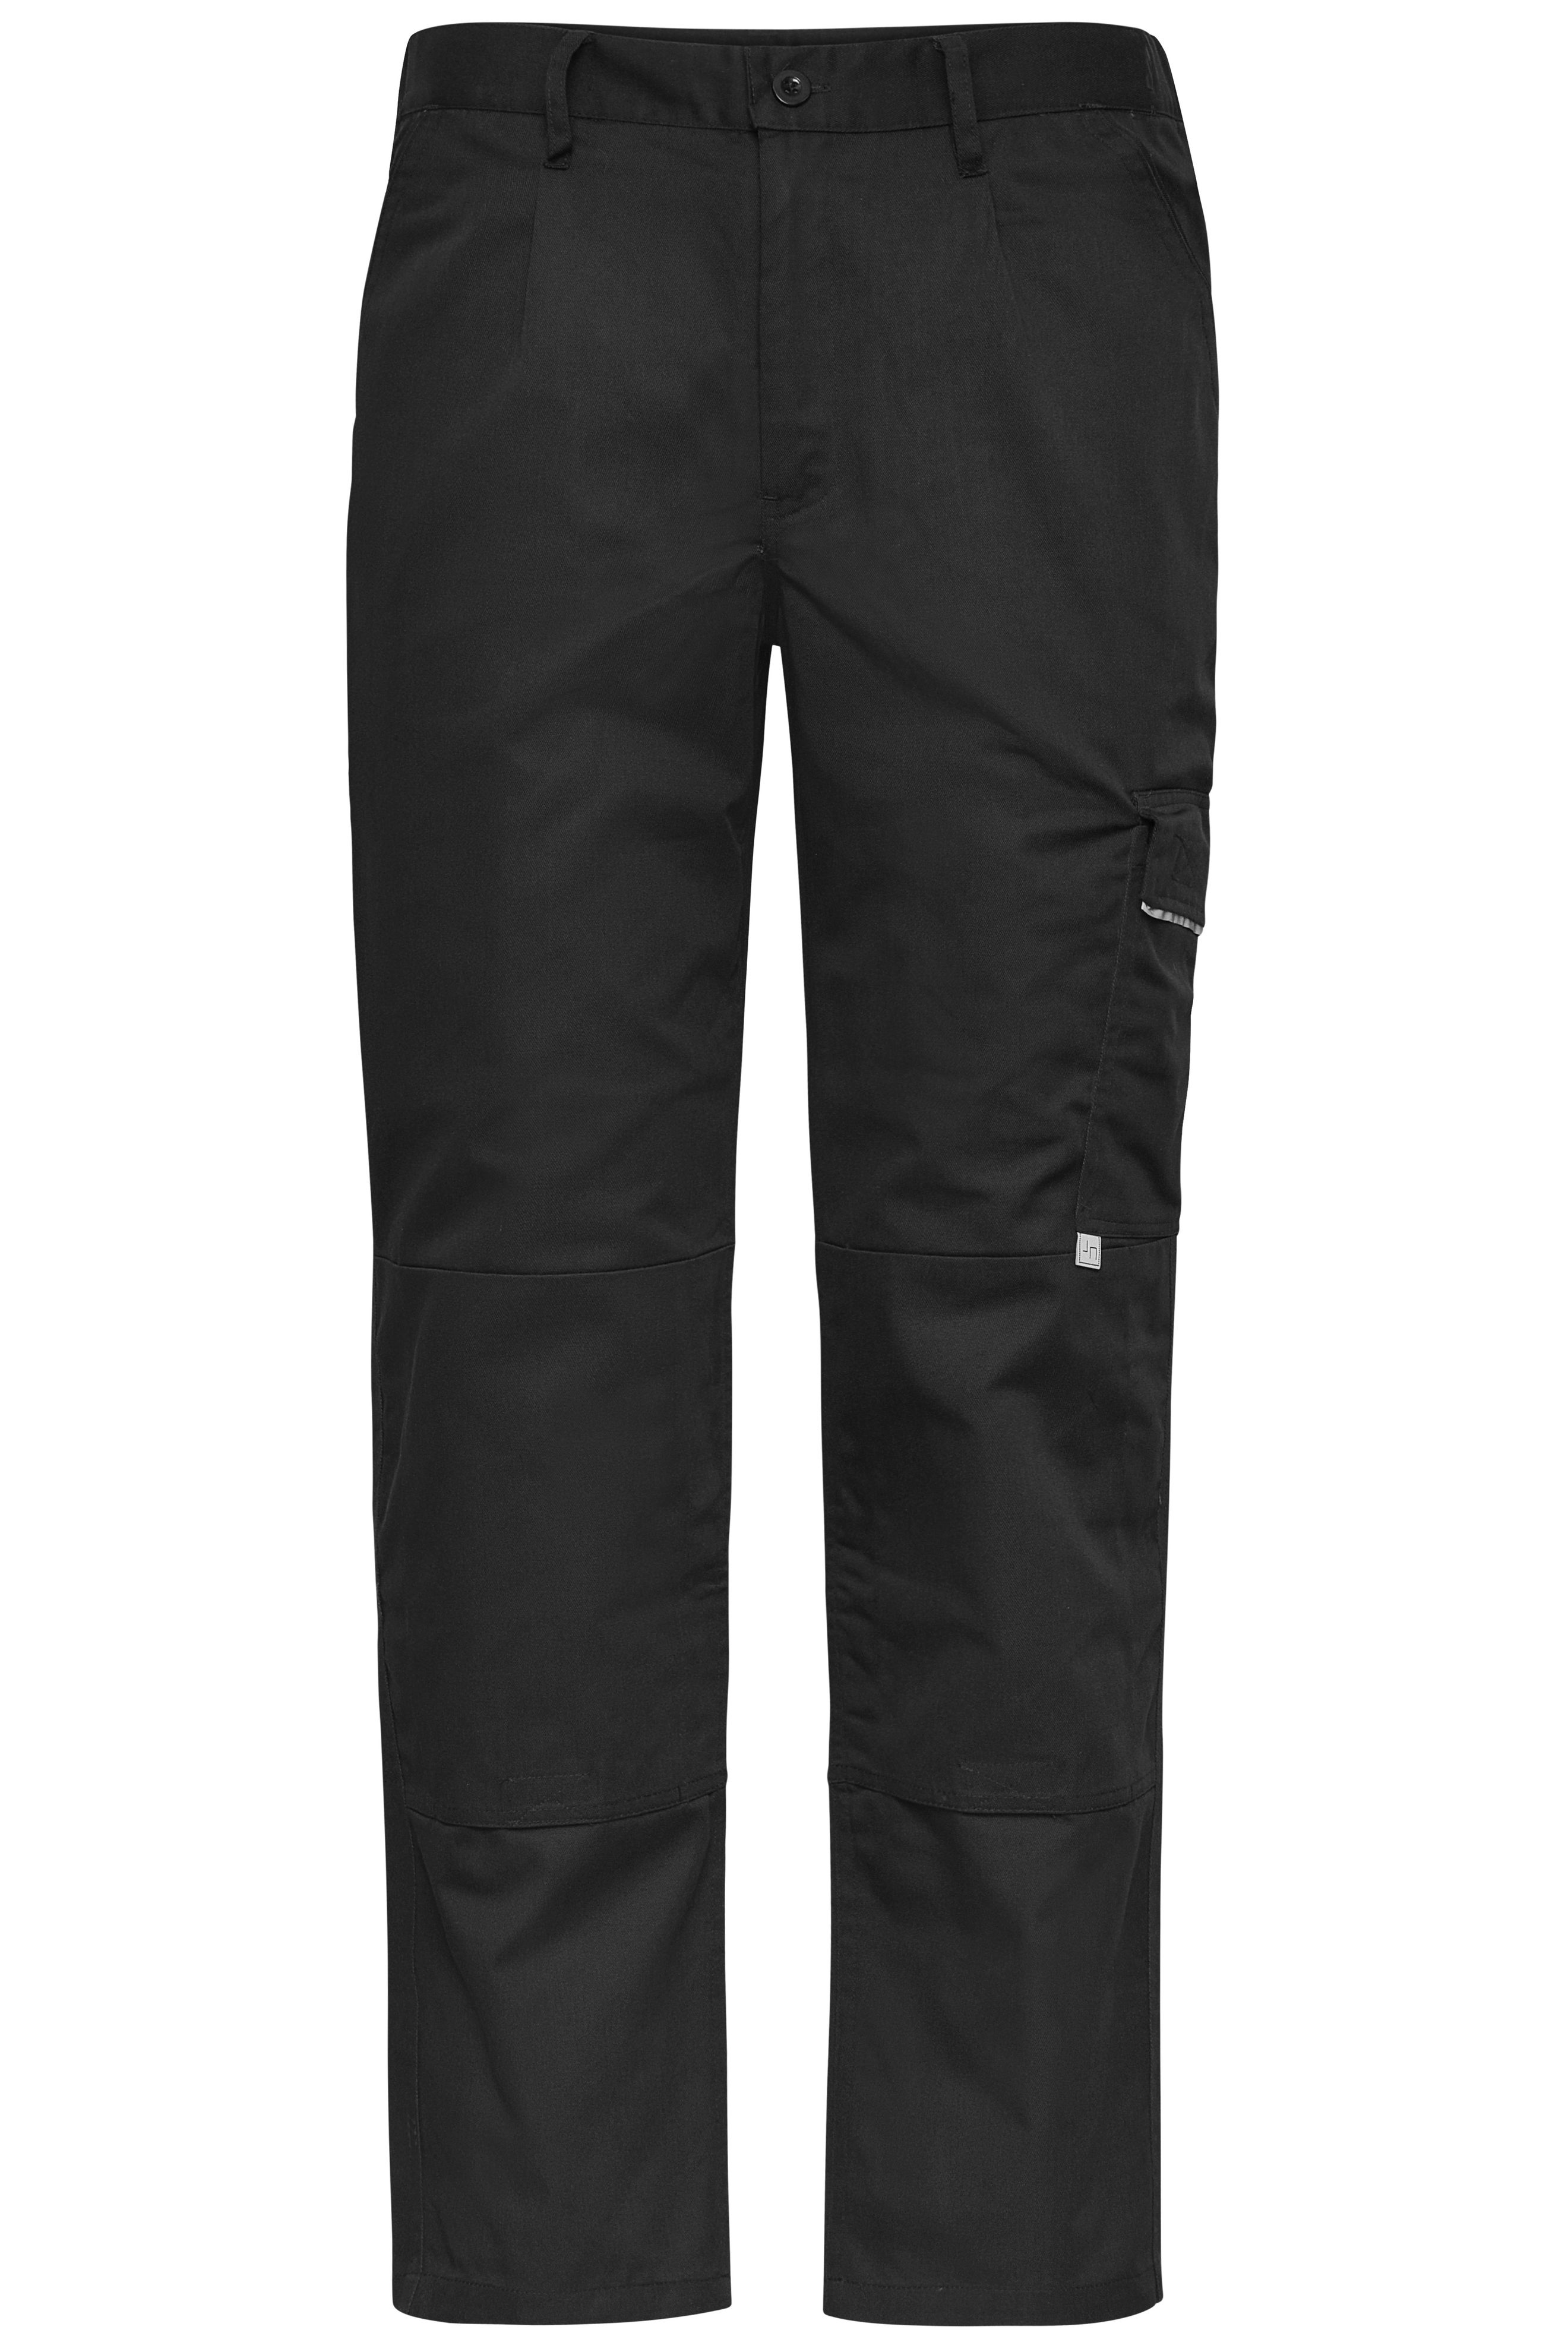 Unisex Workwear Pants Black-Promotextilien.de